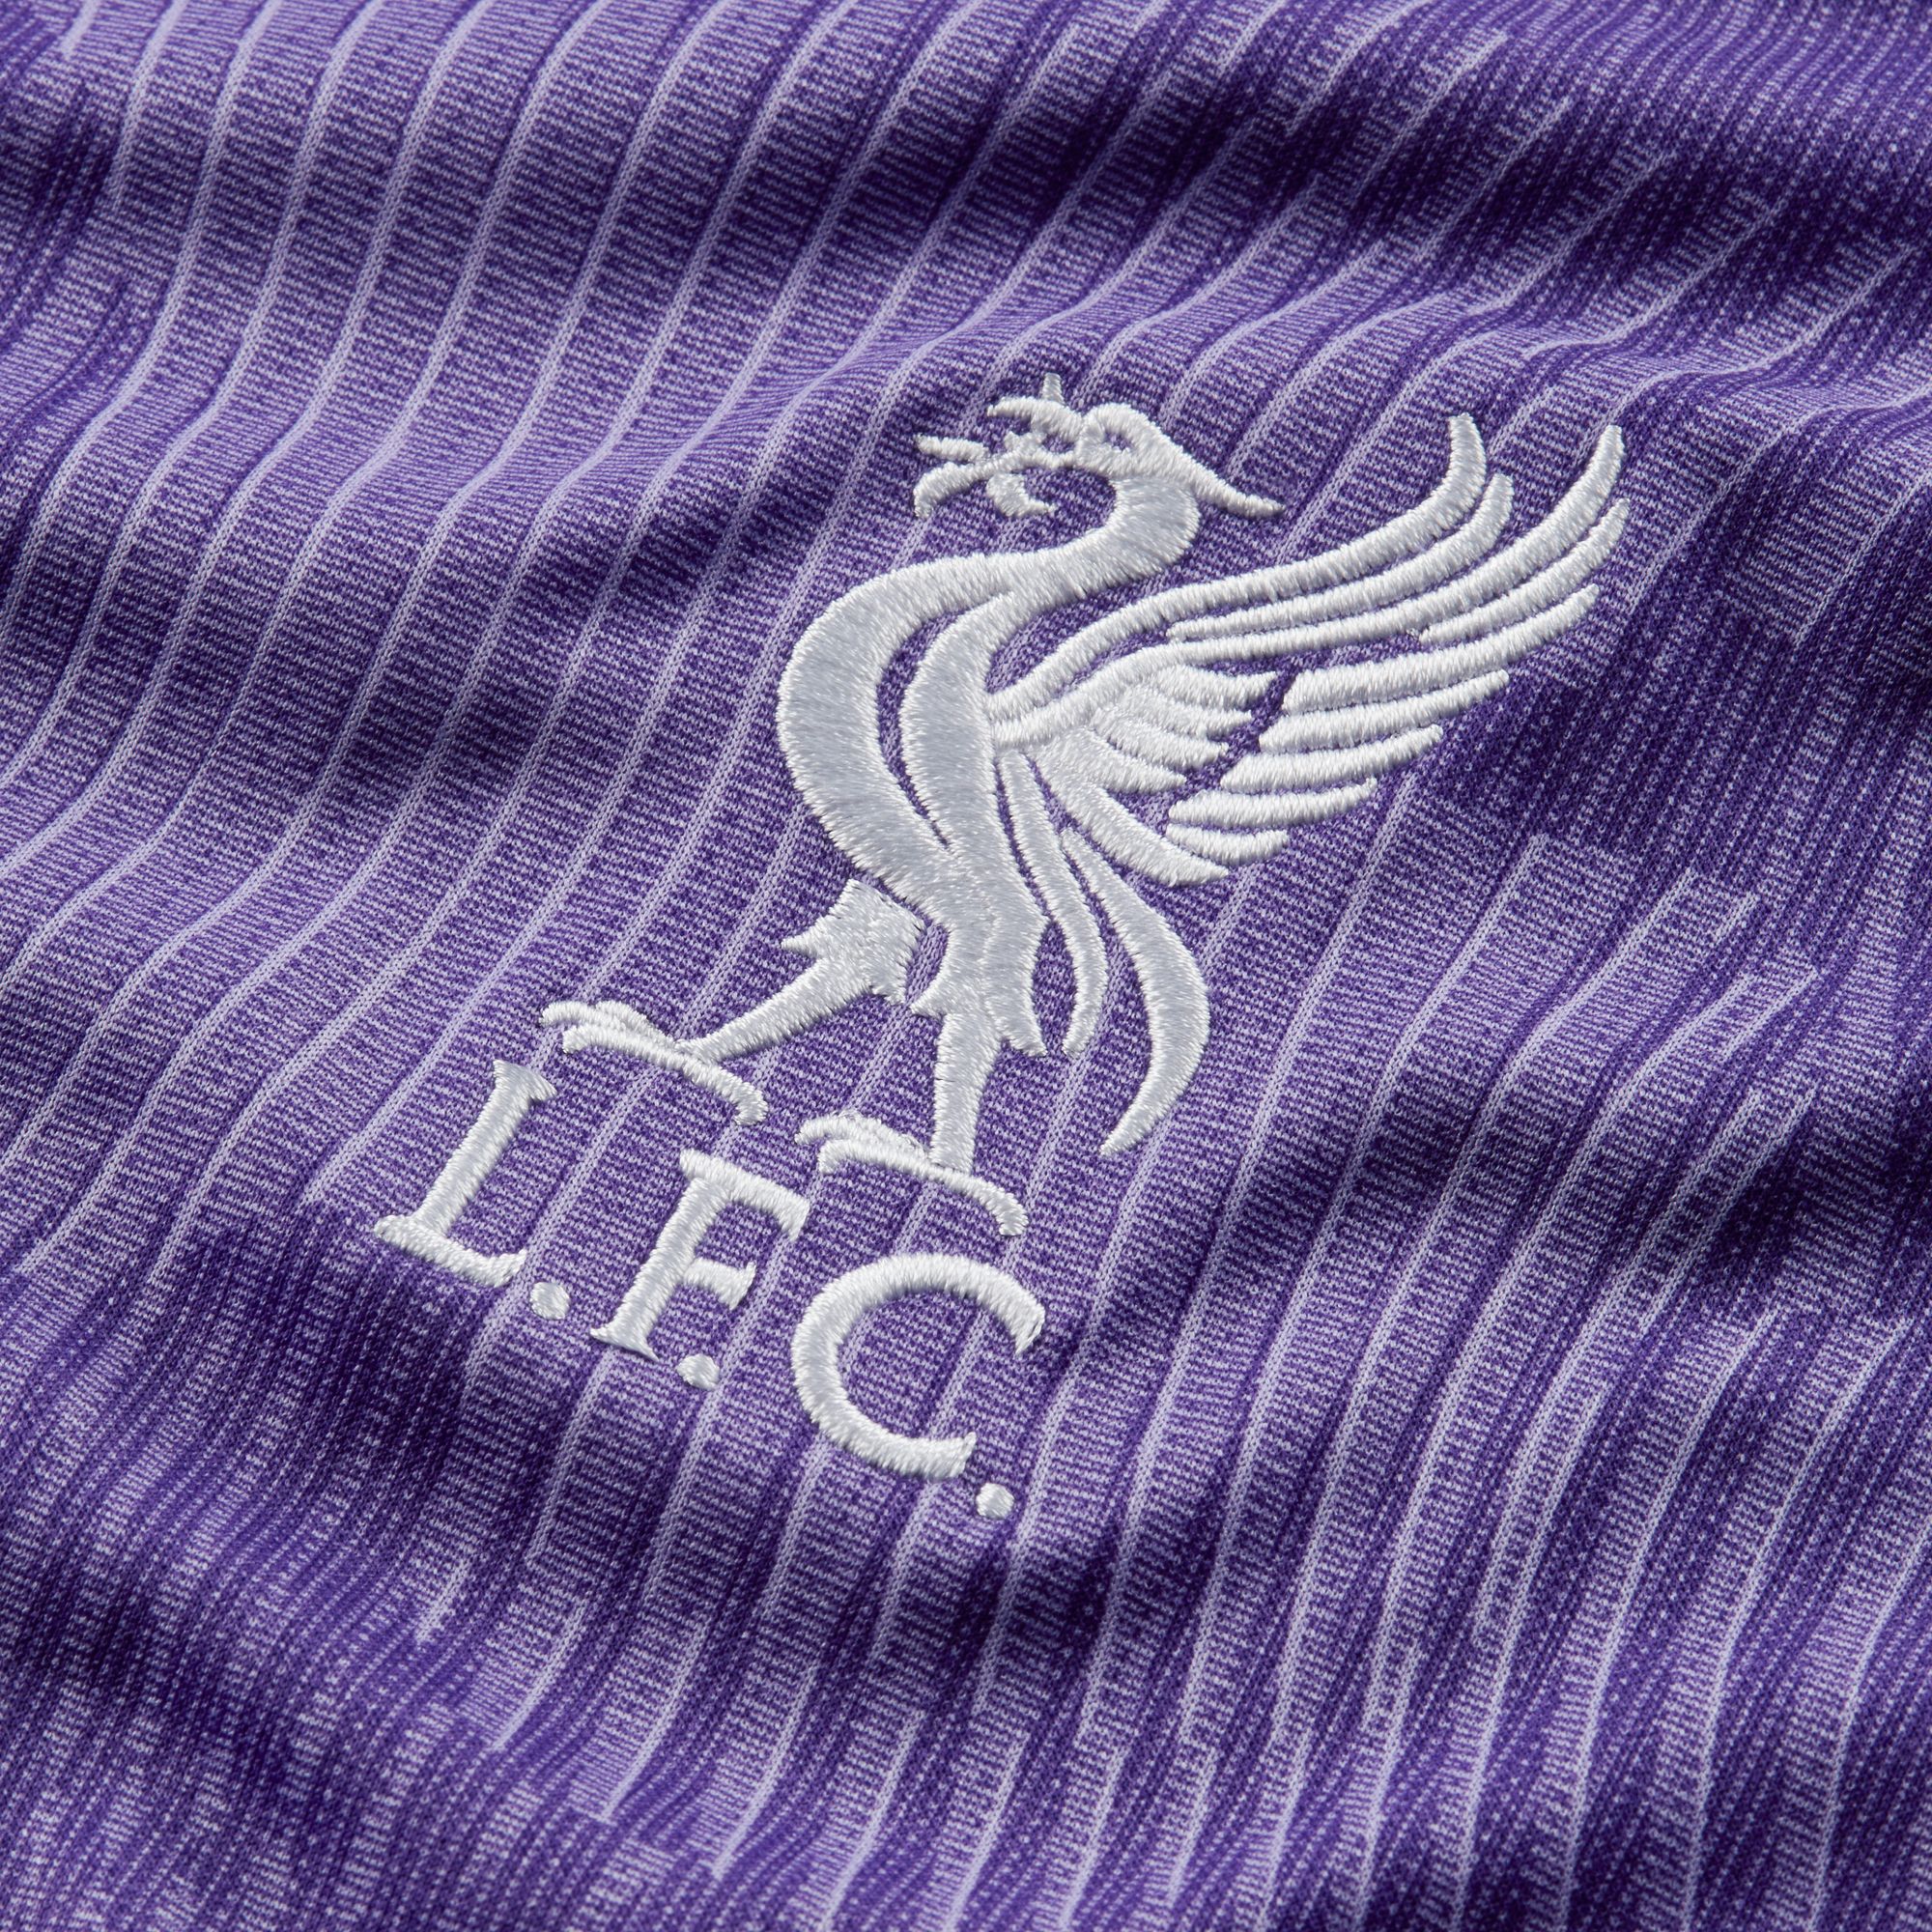 liverpool football kit purple